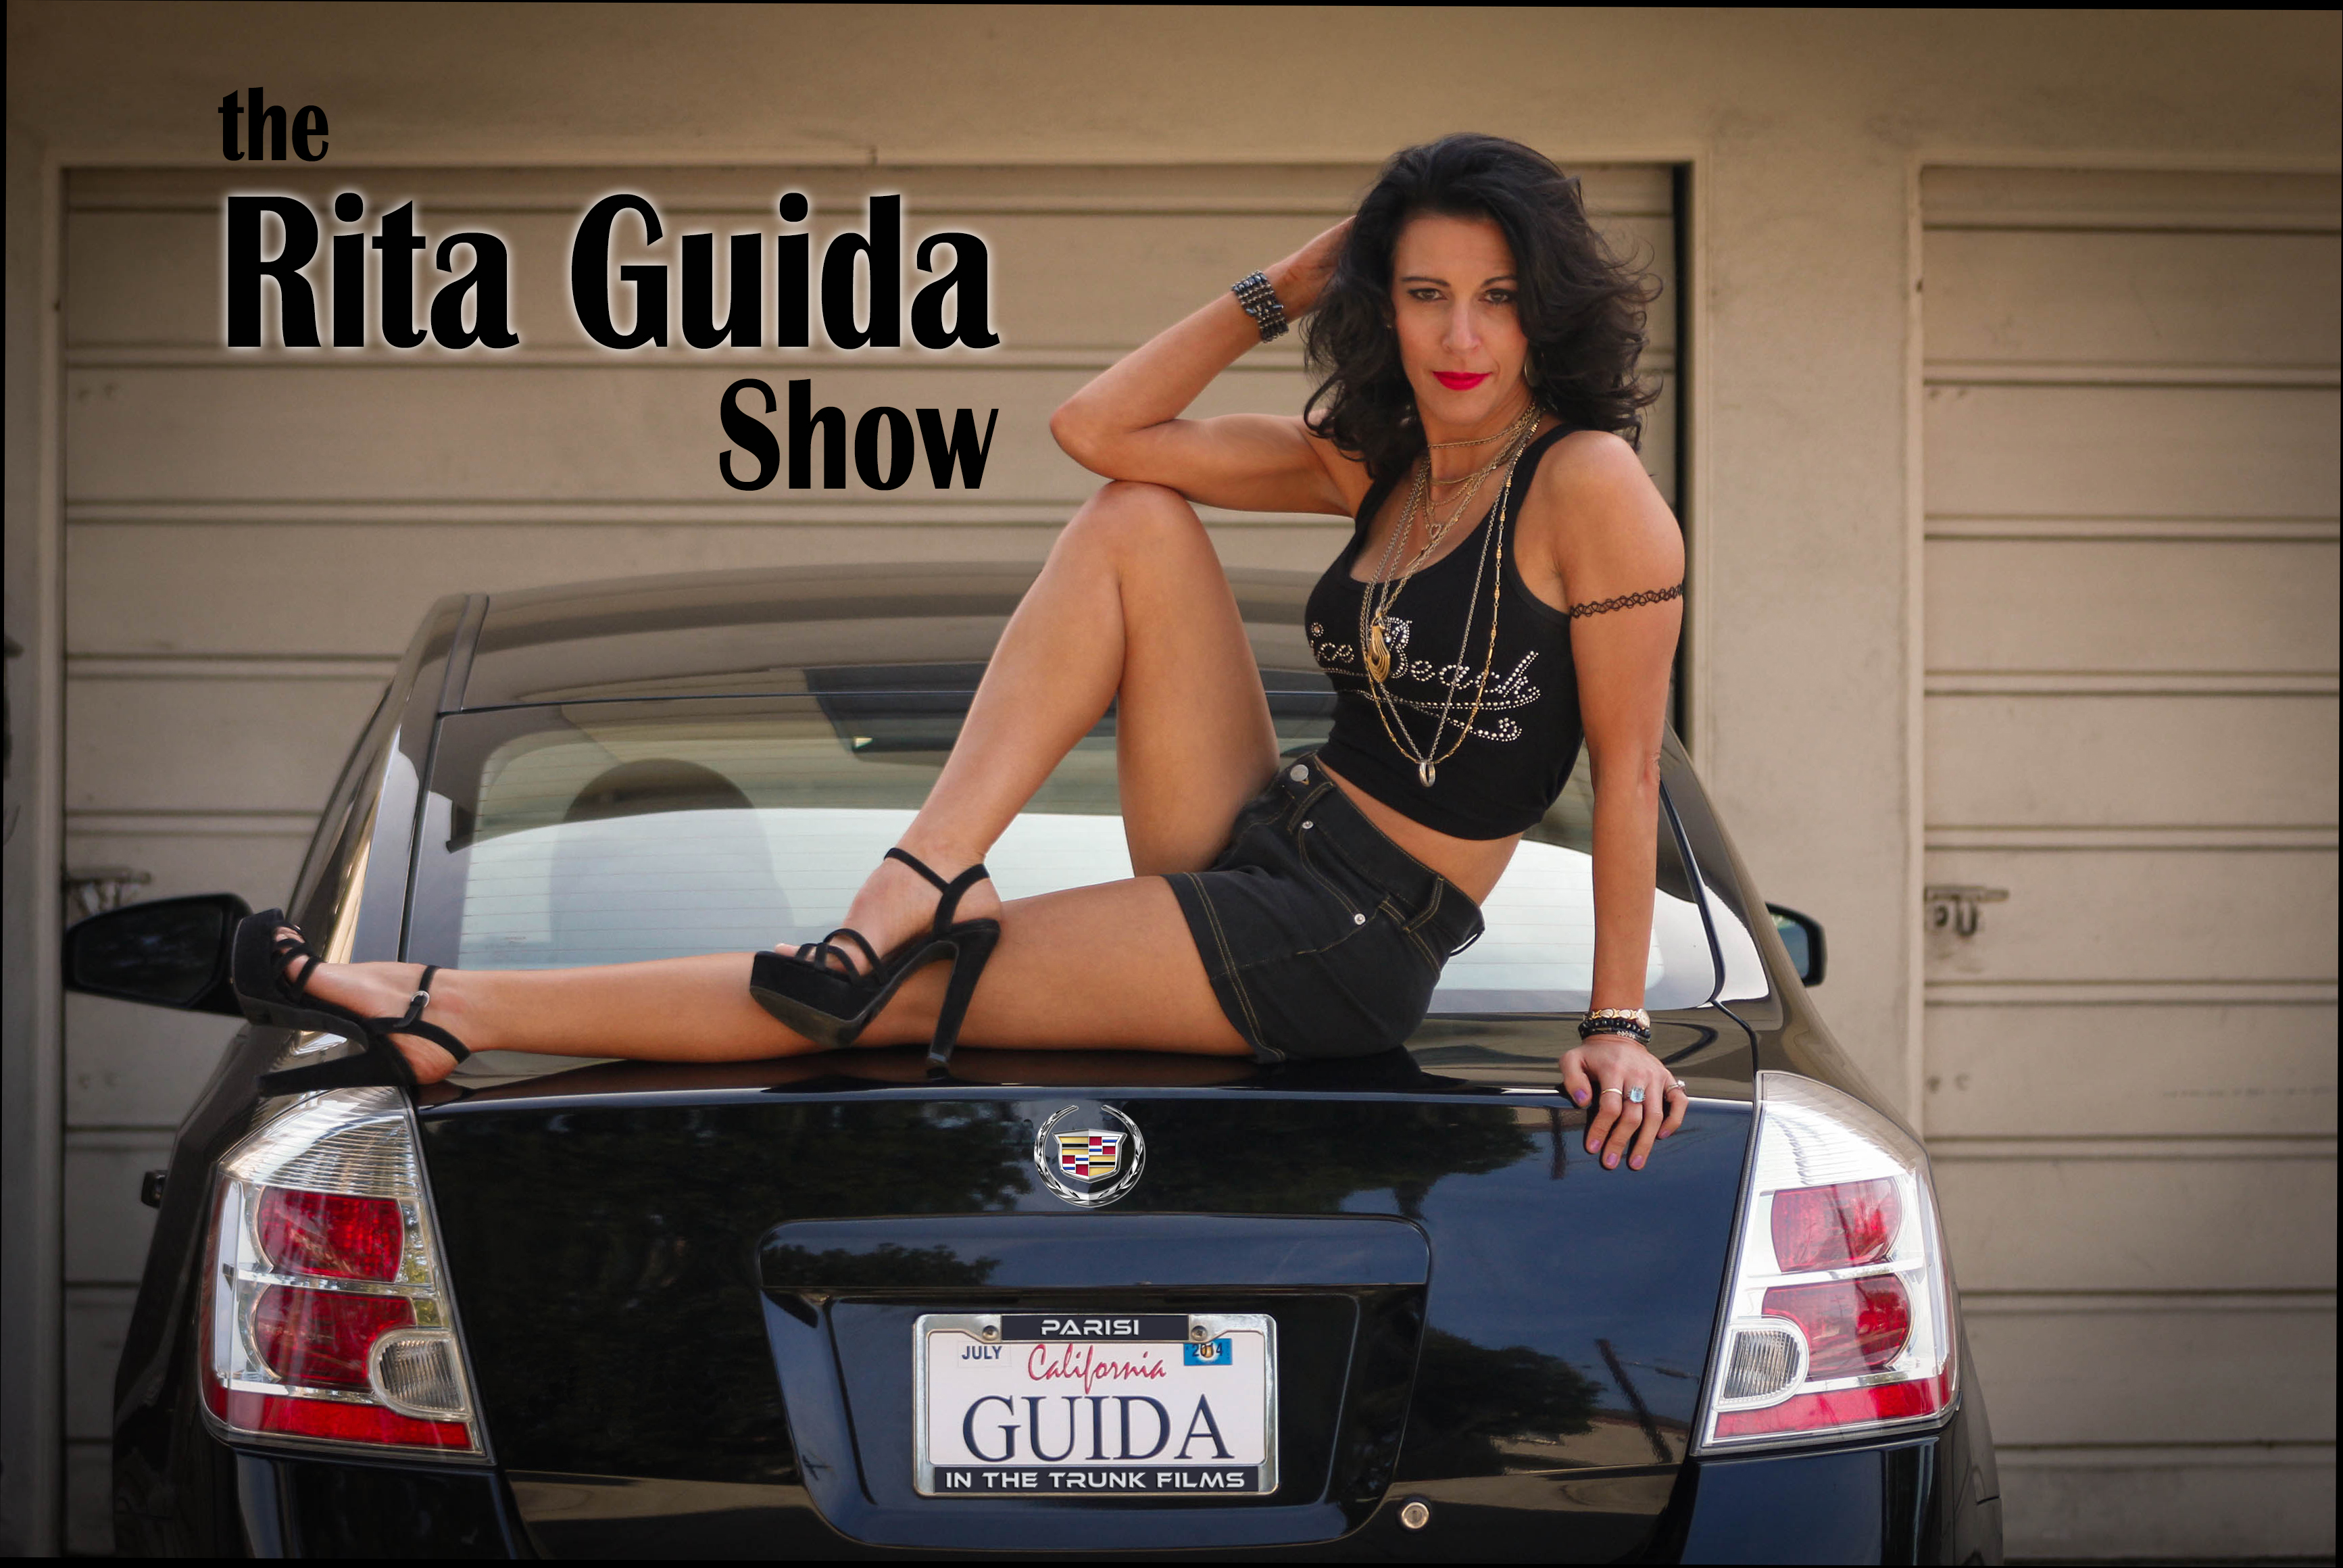 The new RITA GUIDA SHOW